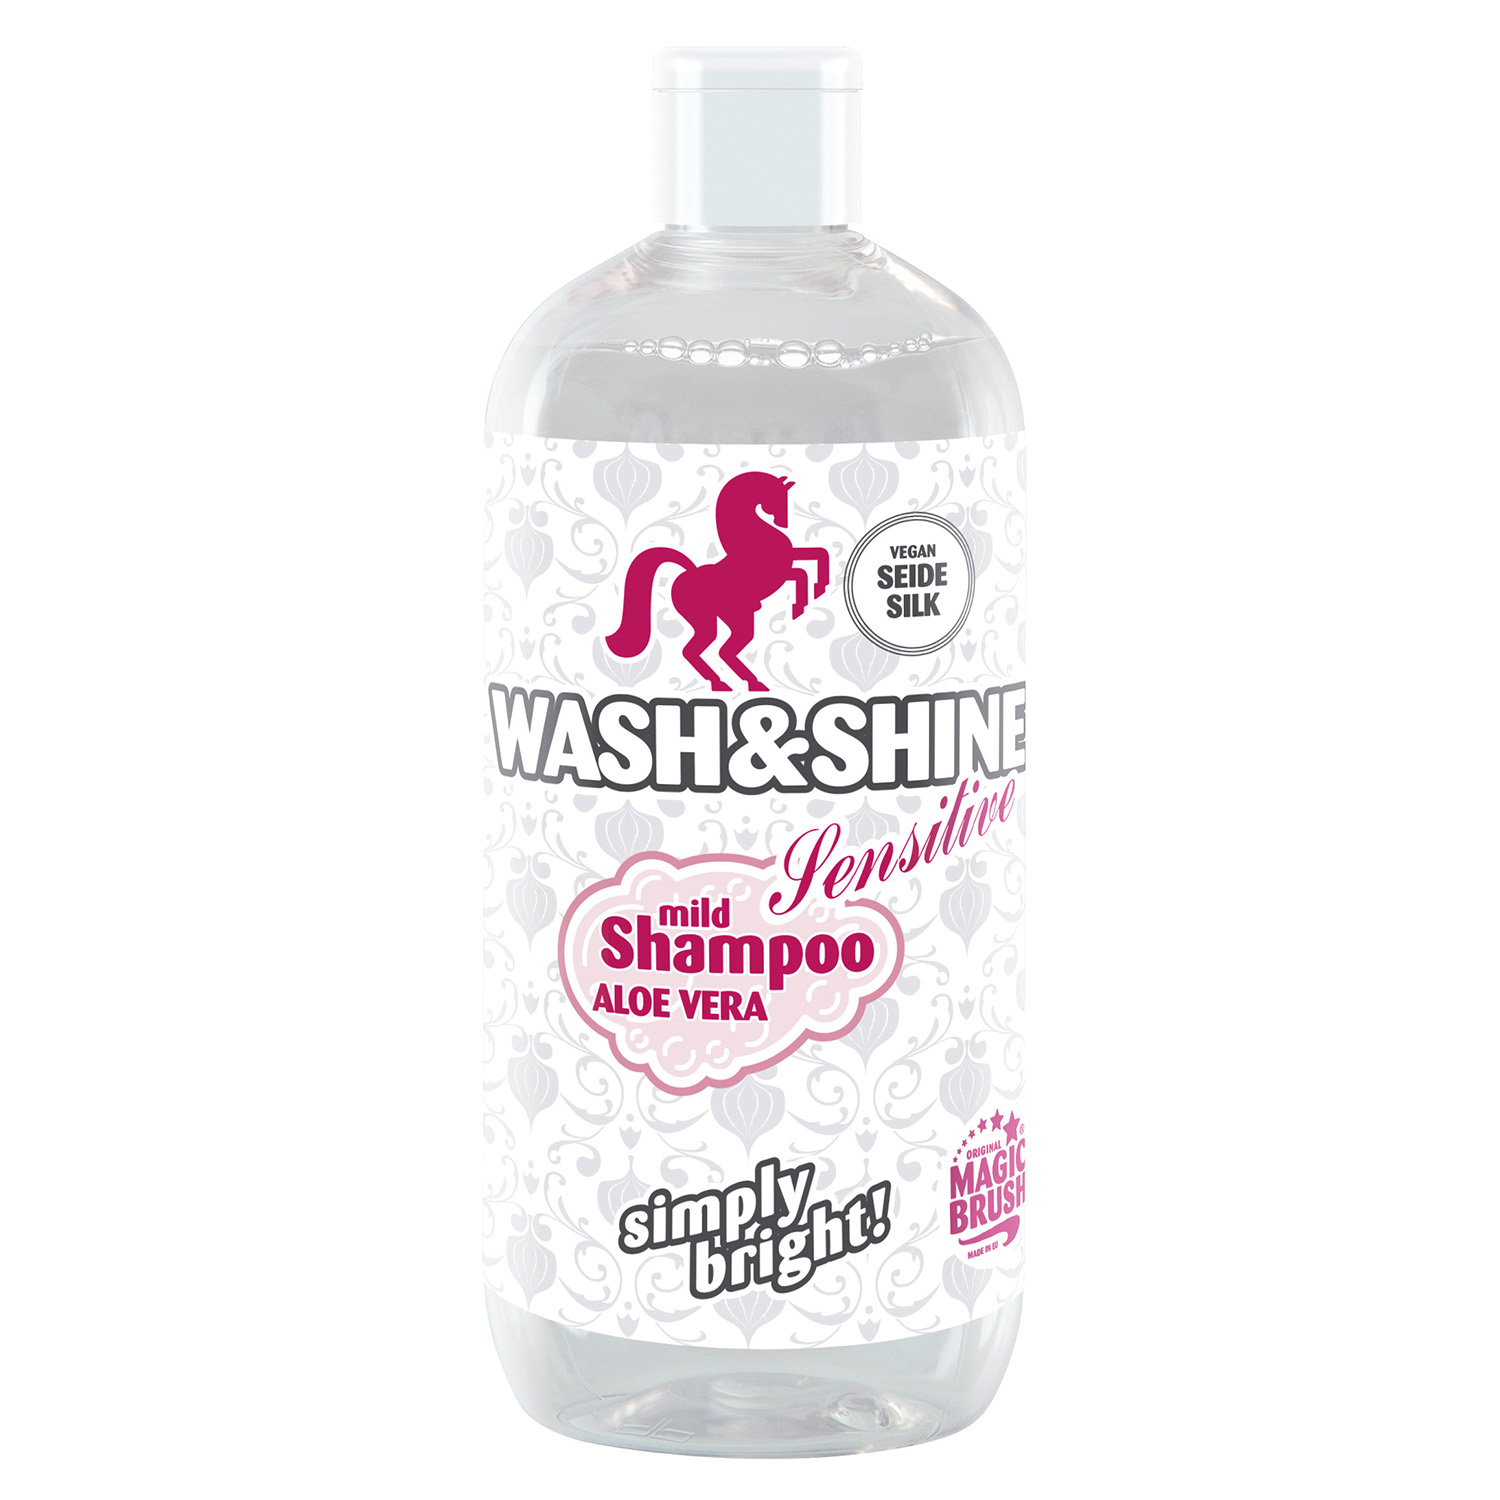 MAGICBRUSH WASH & SHINE SHAMPOO SENSITIVE 500ML 500ML